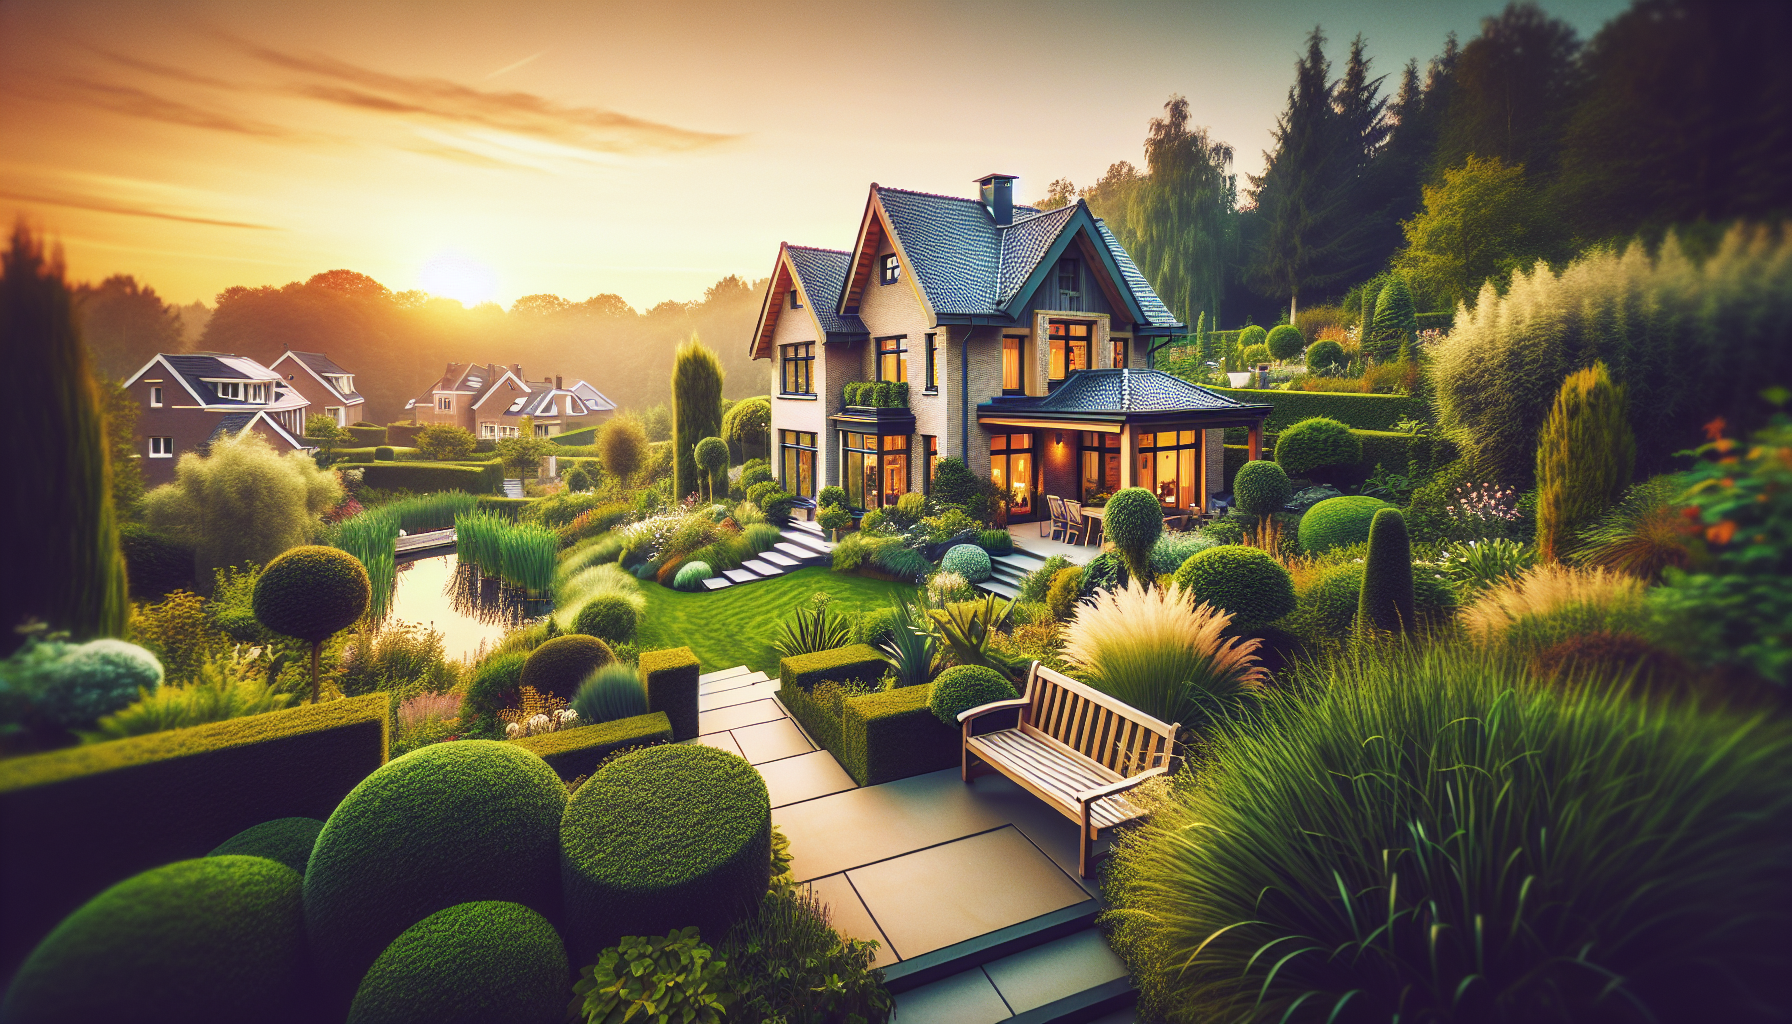 découvrez une sélection de propriétés à vendre à watermael-boitsfort et trouvez la maison de vos rêves dans ce quartier paisible de bruxelles.